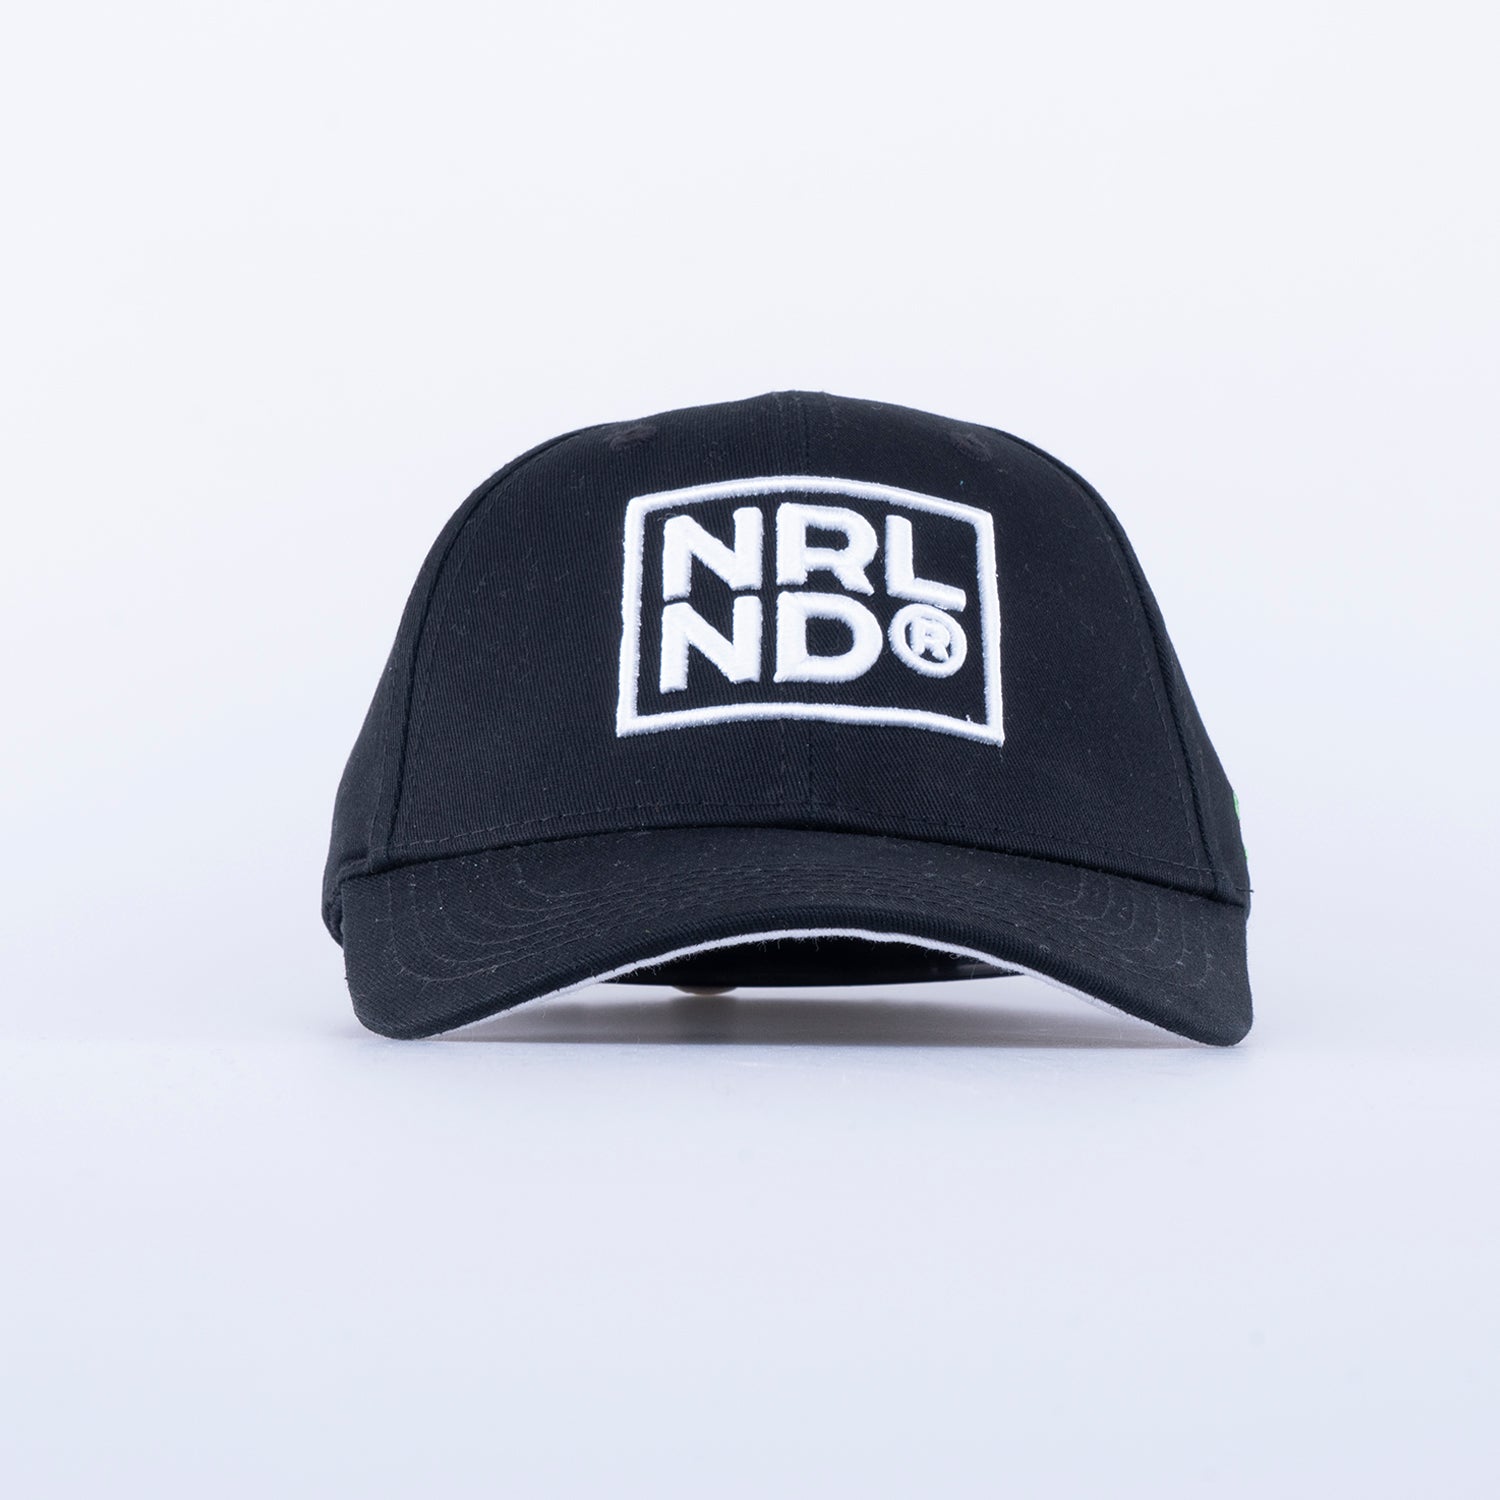 NRLND KEPS - HOOKED BLACK